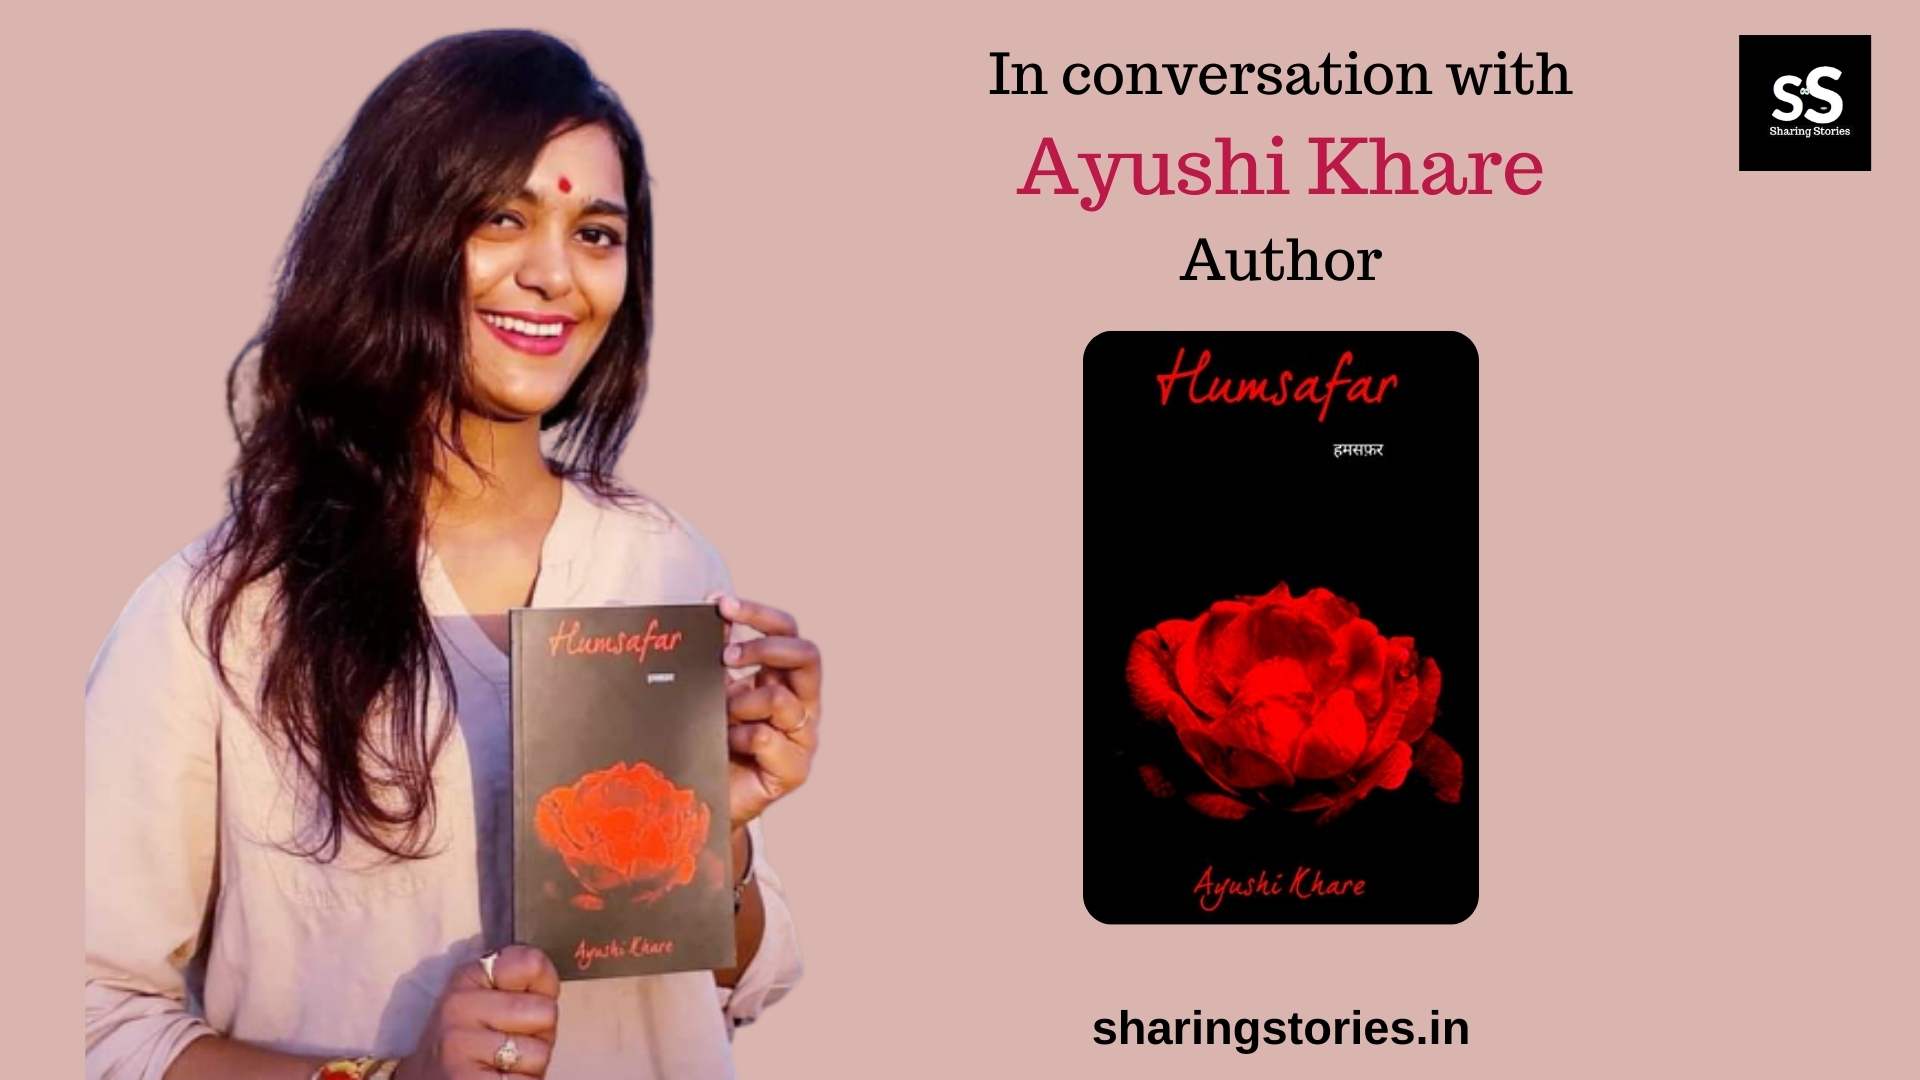 Author Ayushi Khare